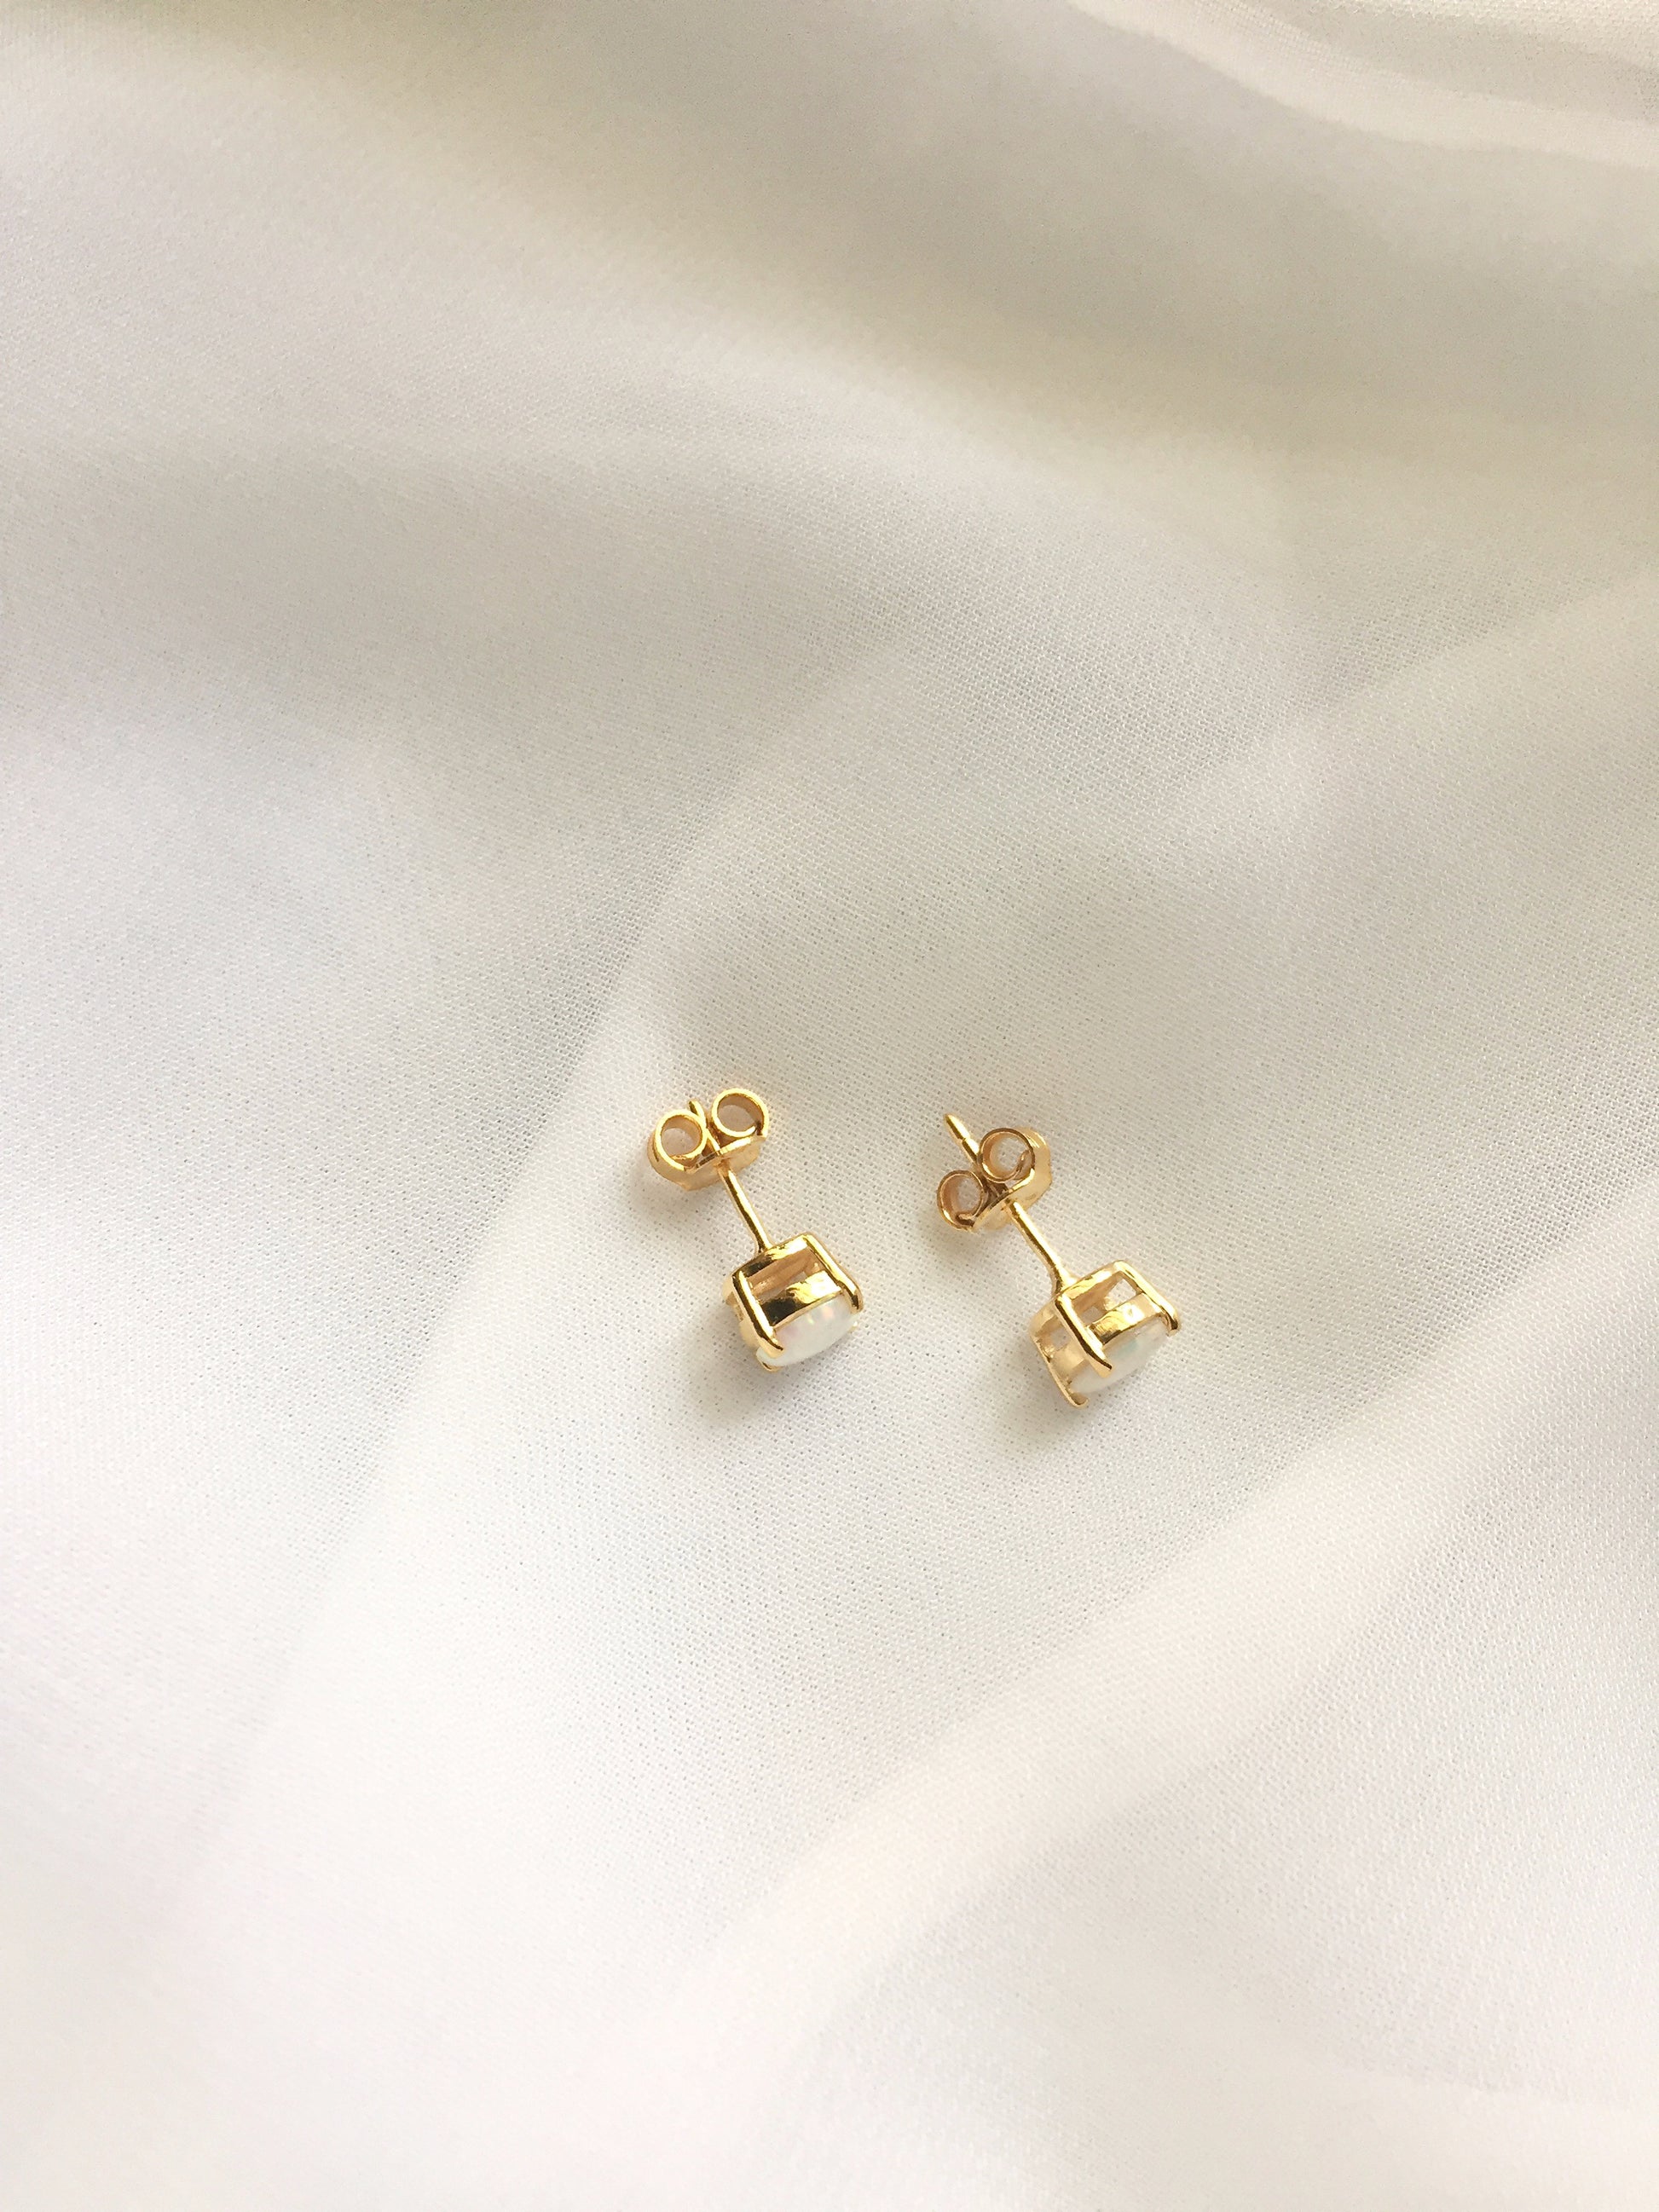 Small Opal Stud Earrings | White Opal Stud Earrings 14k Gold Plated | Dainty Stud Earrings | IB Jewelry